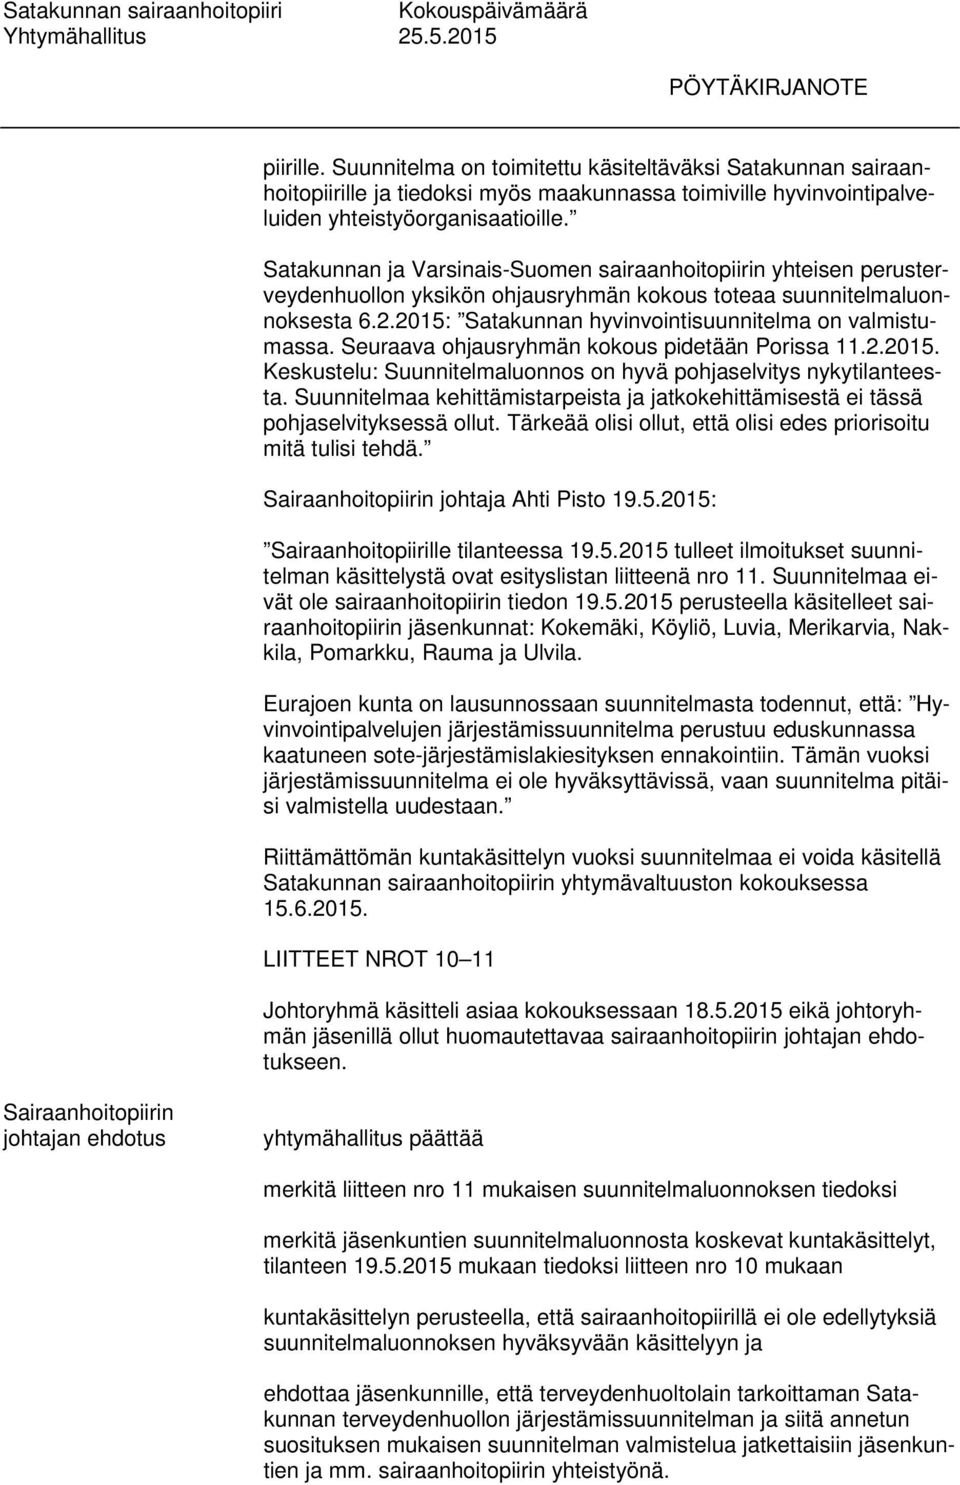 Satakunnan ja Varsinais-Suomen sairaanhoitopiirin yhteisen perusterveydenhuollon yksikön ohjausryhmän kokous toteaa suunnitelmaluonnoksesta 6.2.